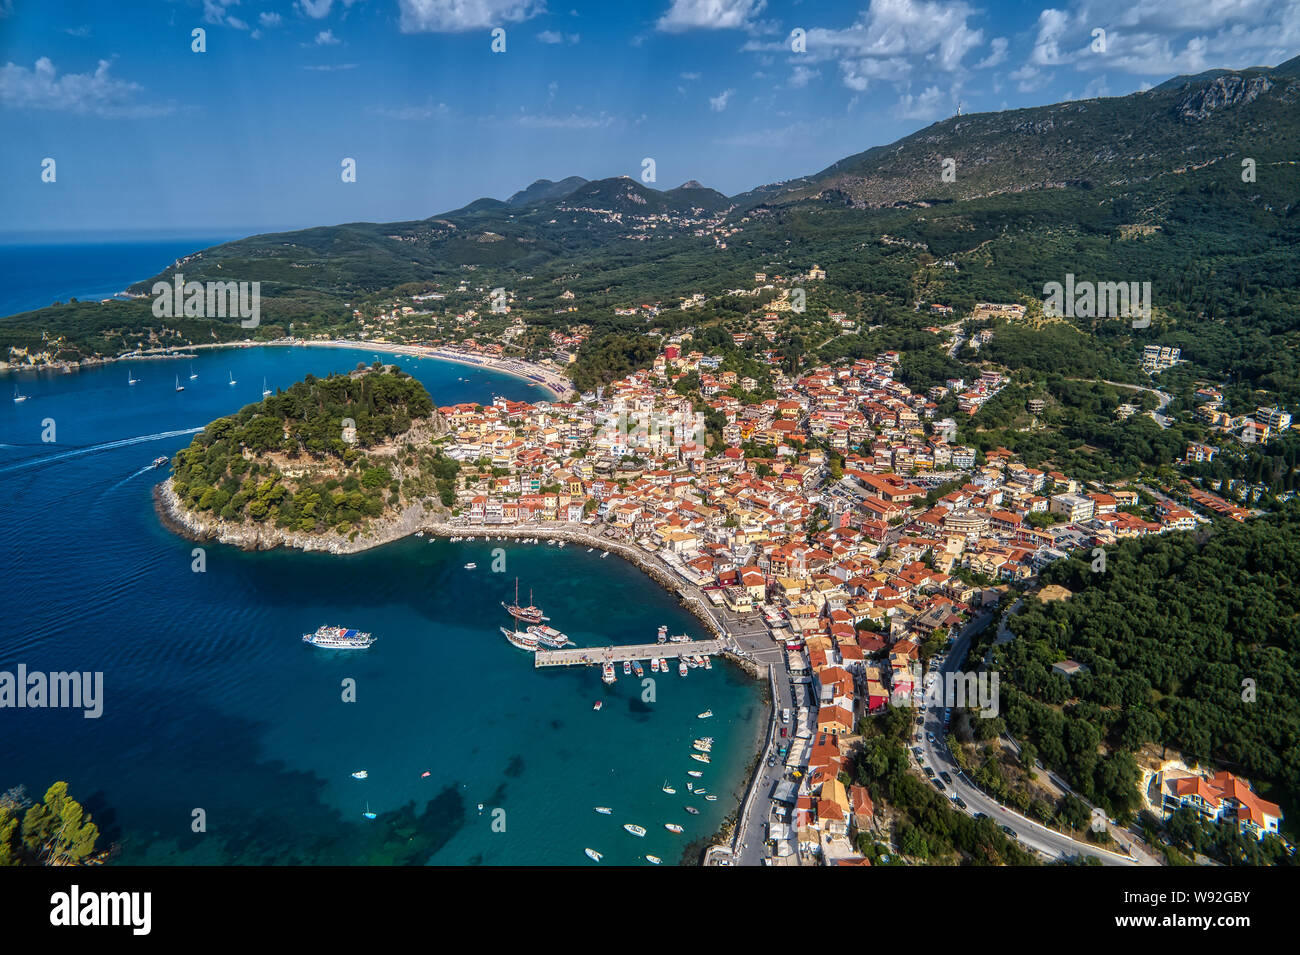 Antenne Stadtbild Blick auf die Küstenstadt Parga, Griechenland im Sommer. Kristall Wasser natürliche Landschaft und schöne architektonische Bauten ne Stockfoto